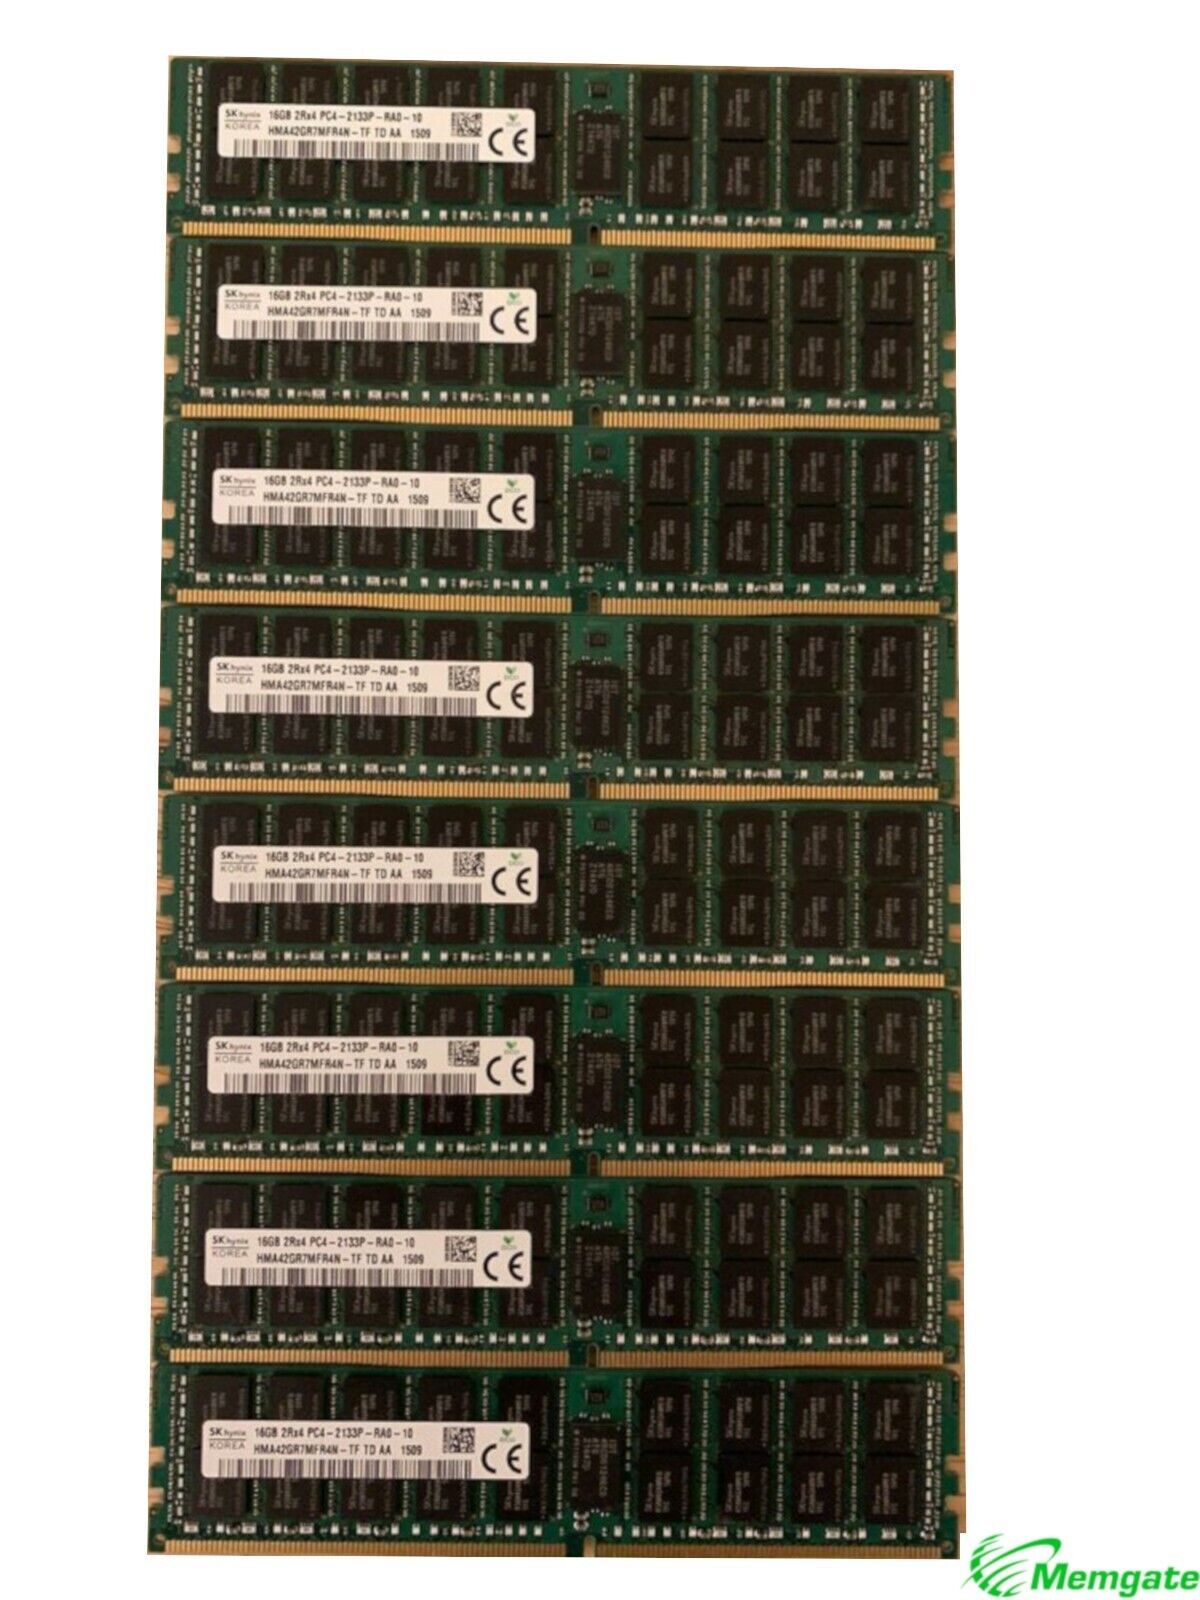 256GB (16x16GB) PC4-17000P-R DDR4 2133P ECC RDIMM Memory for Dell PowerEdge T630